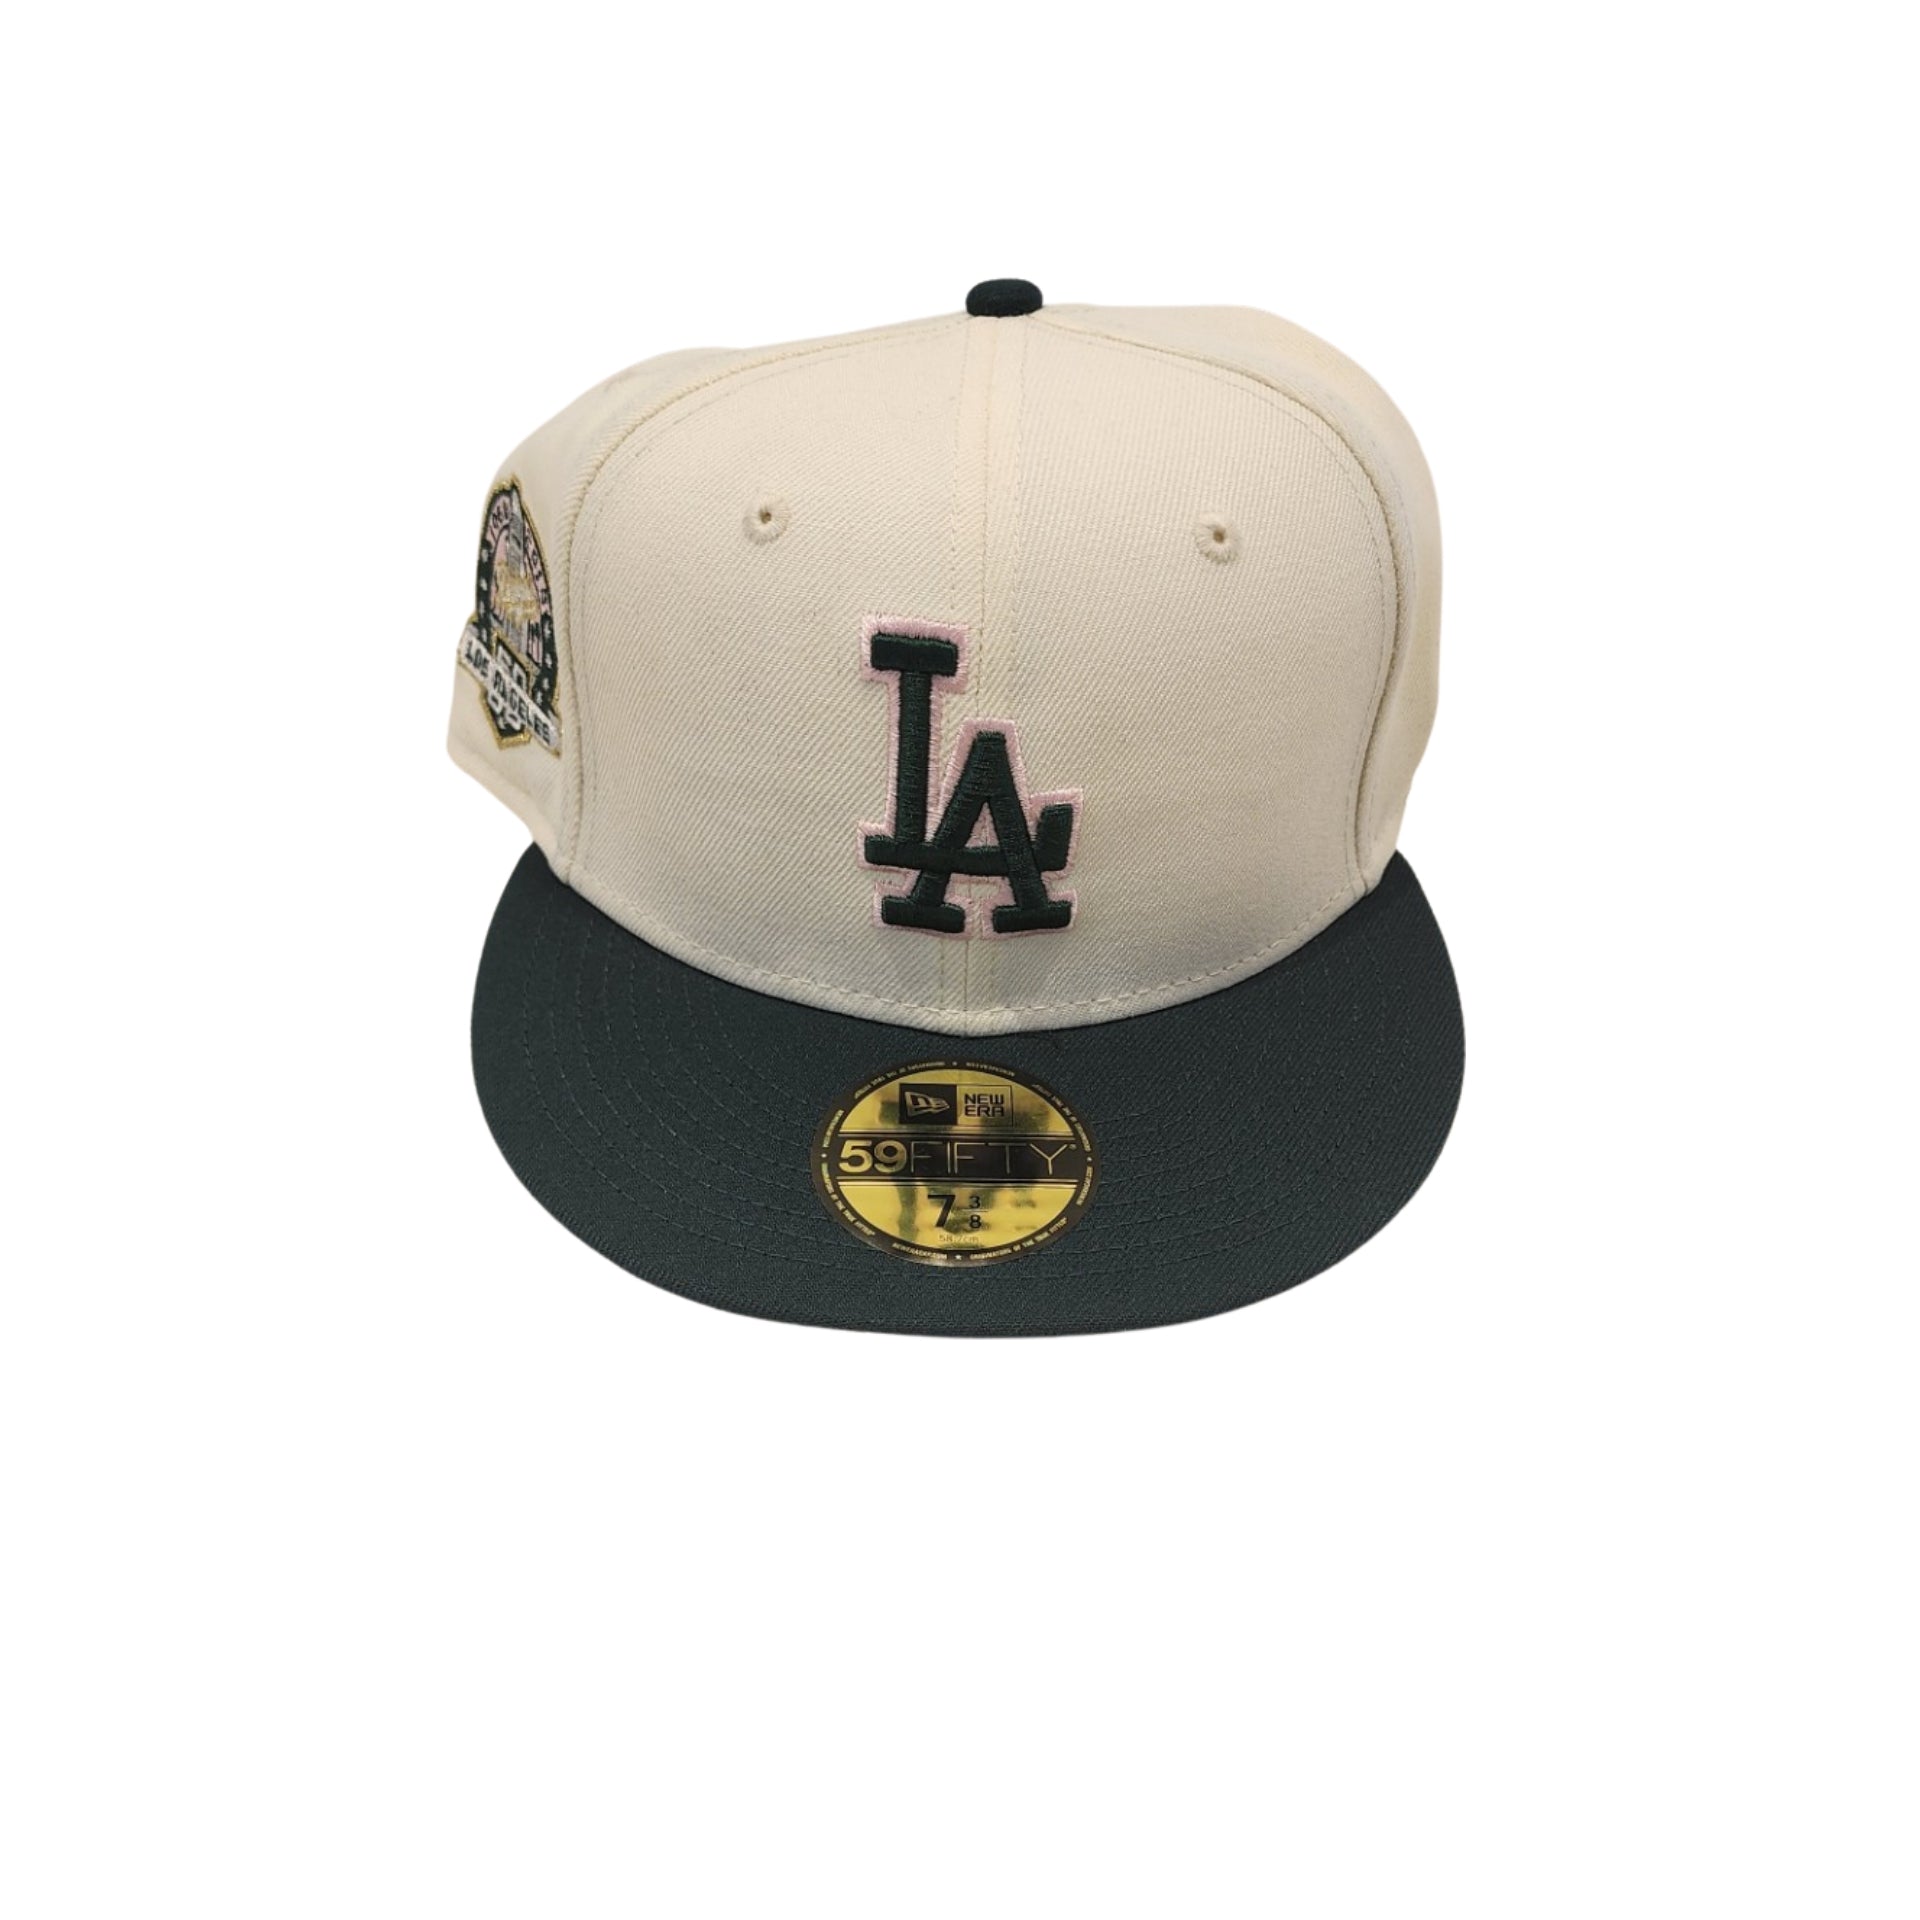 New Era X Legit Kicks 59Fifty LA Dodgers Side Patch Hat